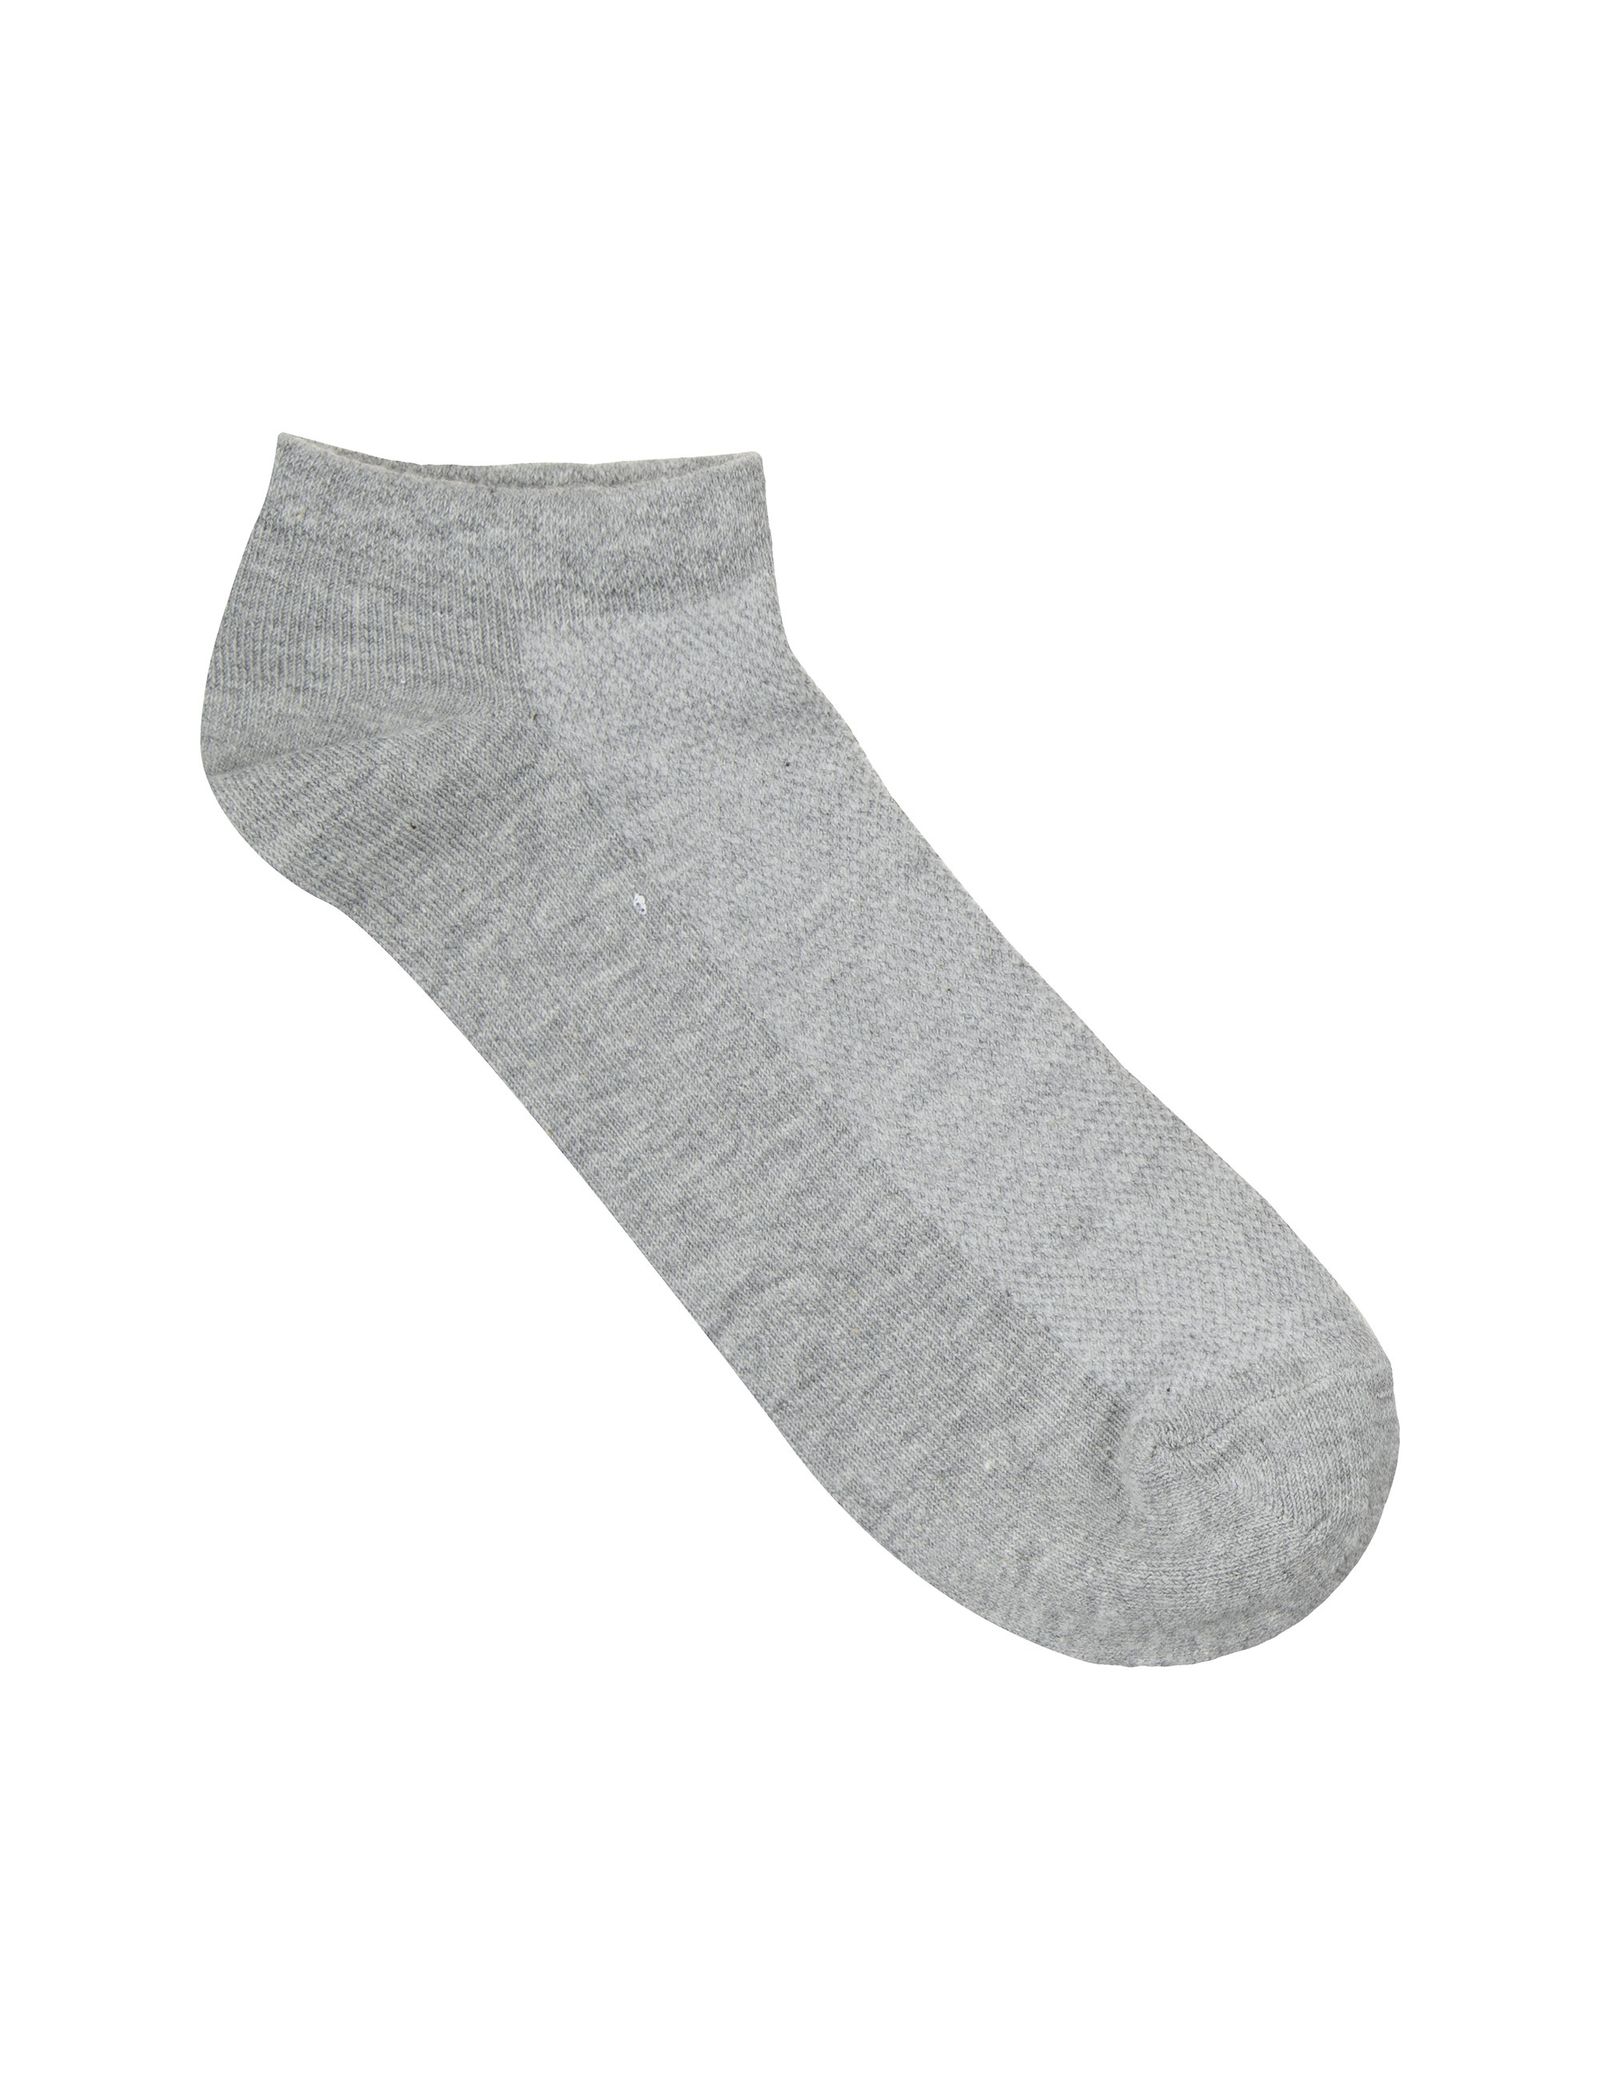 جوراب نخی بدون ساق مردانه بسته 3 عددی - مادام کوکو - طوسي/سرمه اي/زغالي - 5